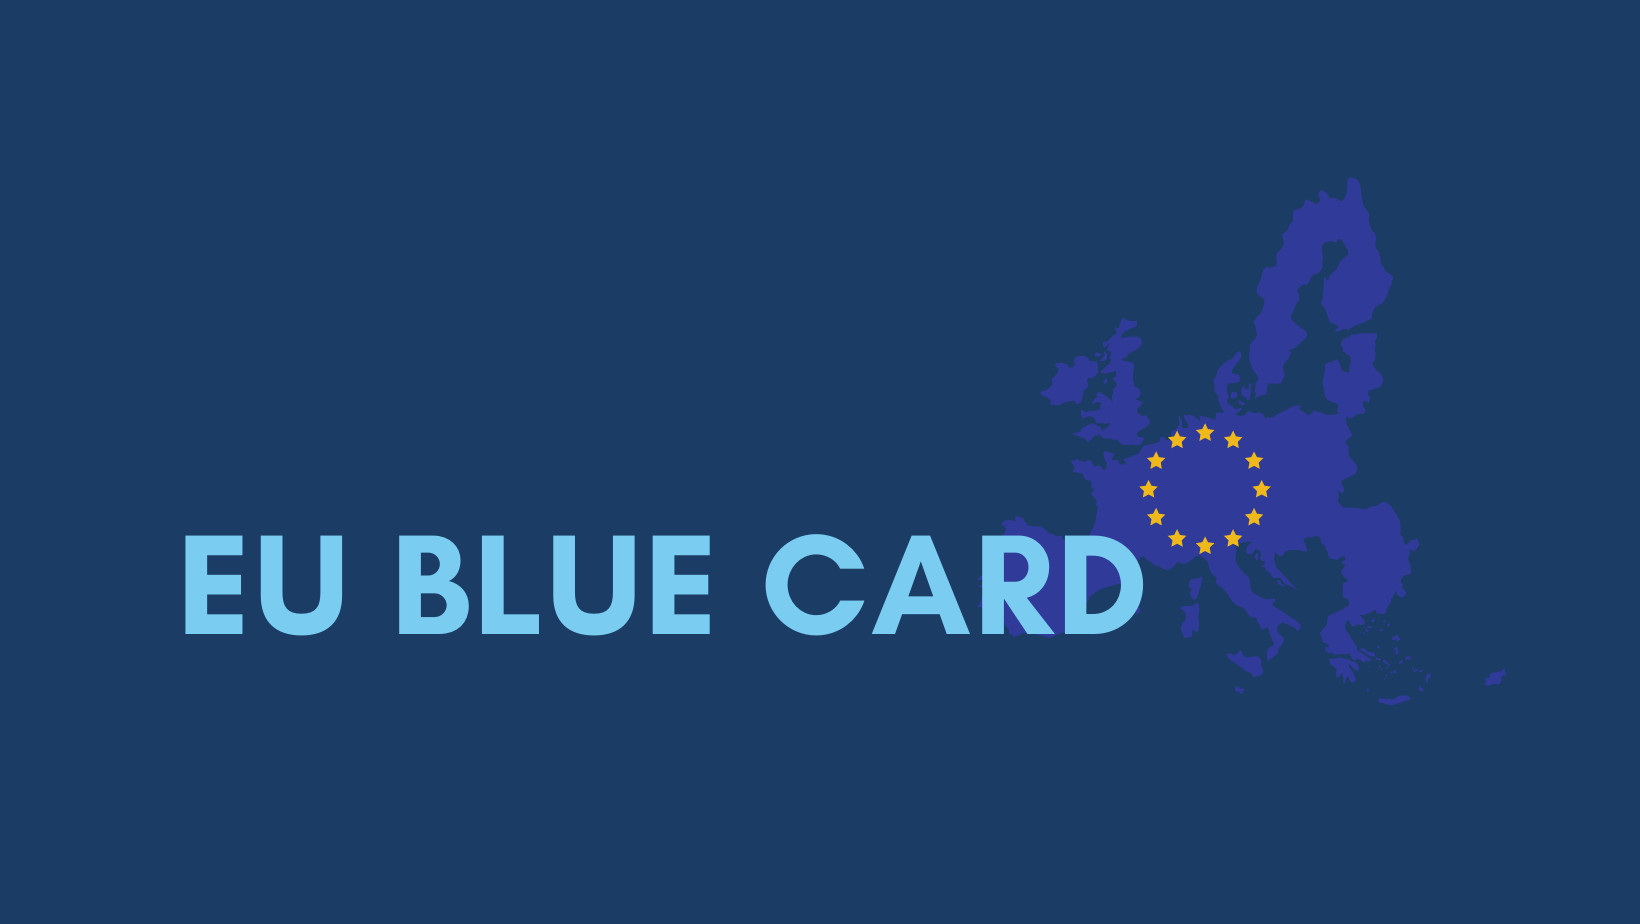 EU BLUE CARD